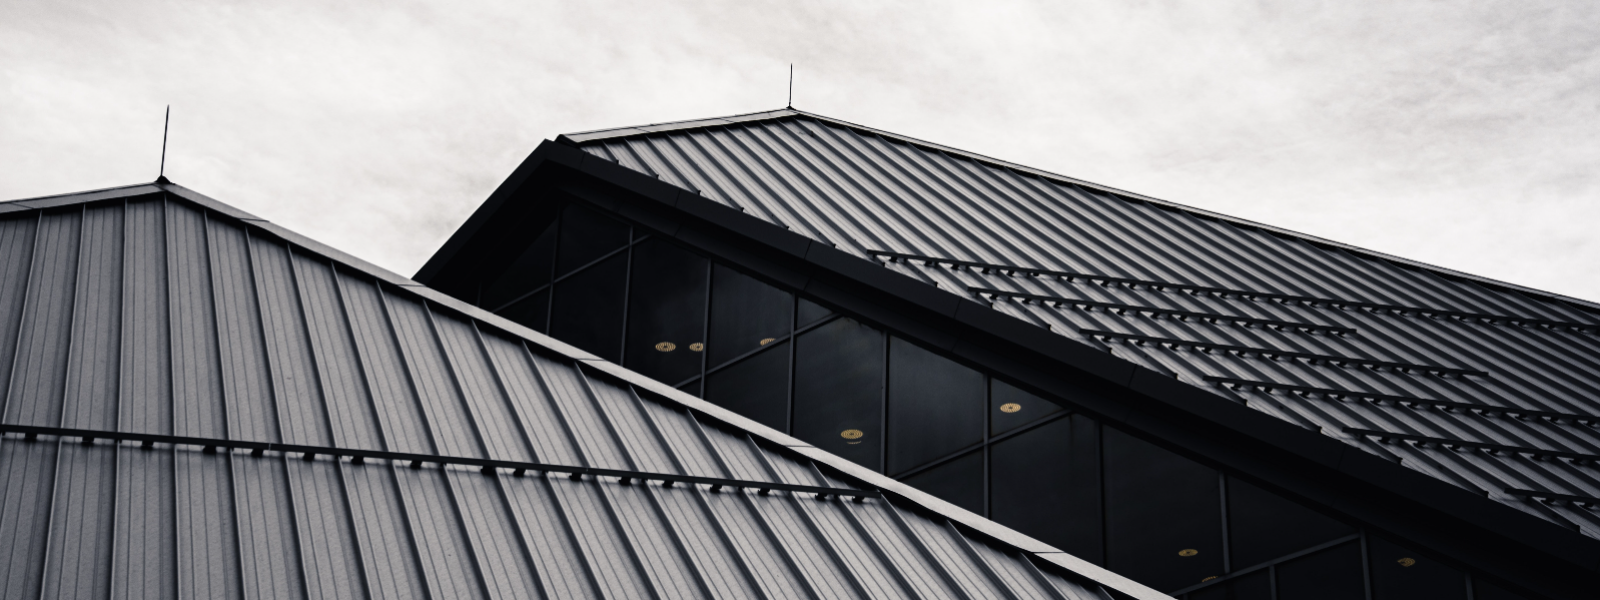 STEEL.EE OÜ - Meie põhitegevuseks on katusetööd ja katusematerjali müük, oleme kodumaiste teraskatuste tootjate amet...